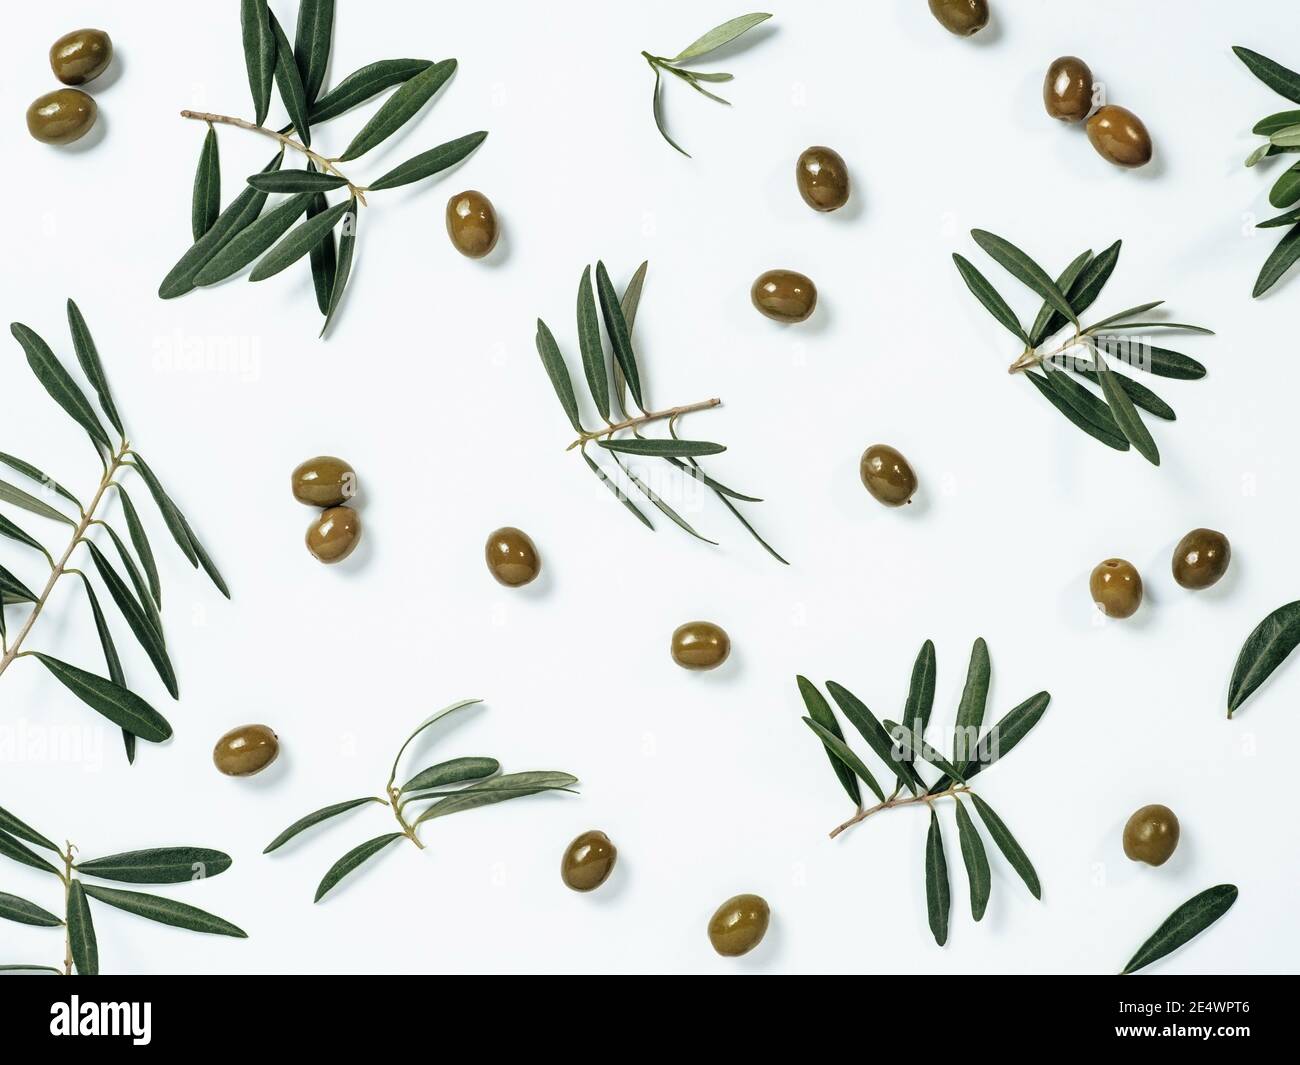 Schönes Muster mit grünen Oliven und Oliven Baum Blätter und Zweige auf weißem Hintergrund. Olivenbaum Früchte und Äste als Muster, Draufsicht oder flach legen. Stockfoto